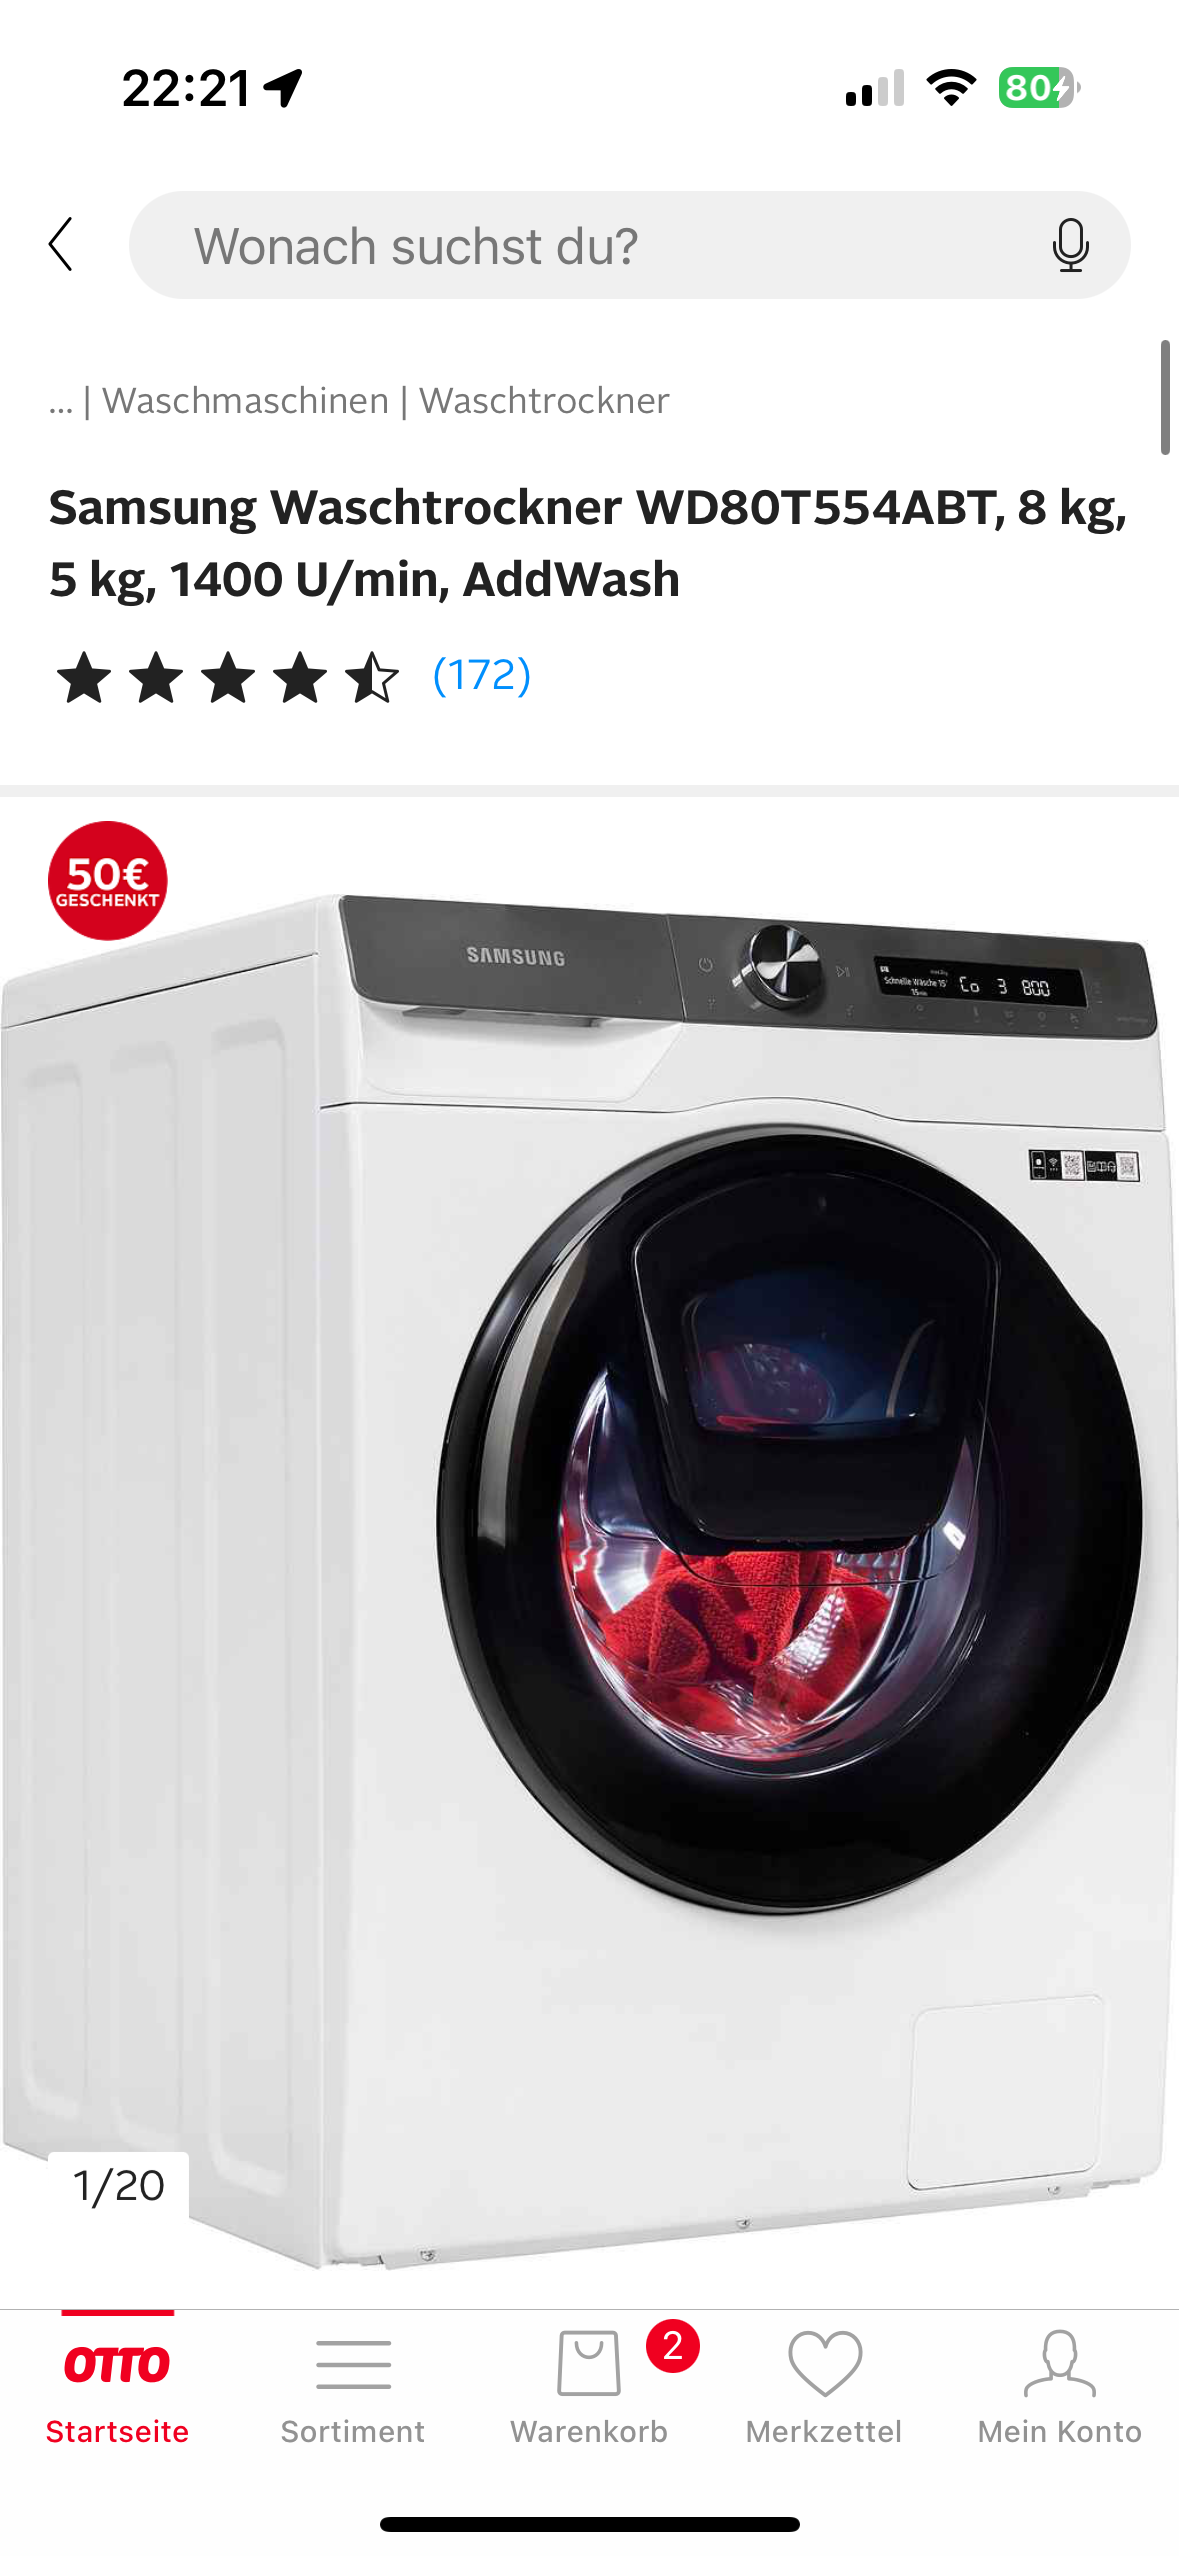 ihr Trockner) (Waschmaschine, Haushaltsgeräte, waschtrockner Würdet diesen kaufen?